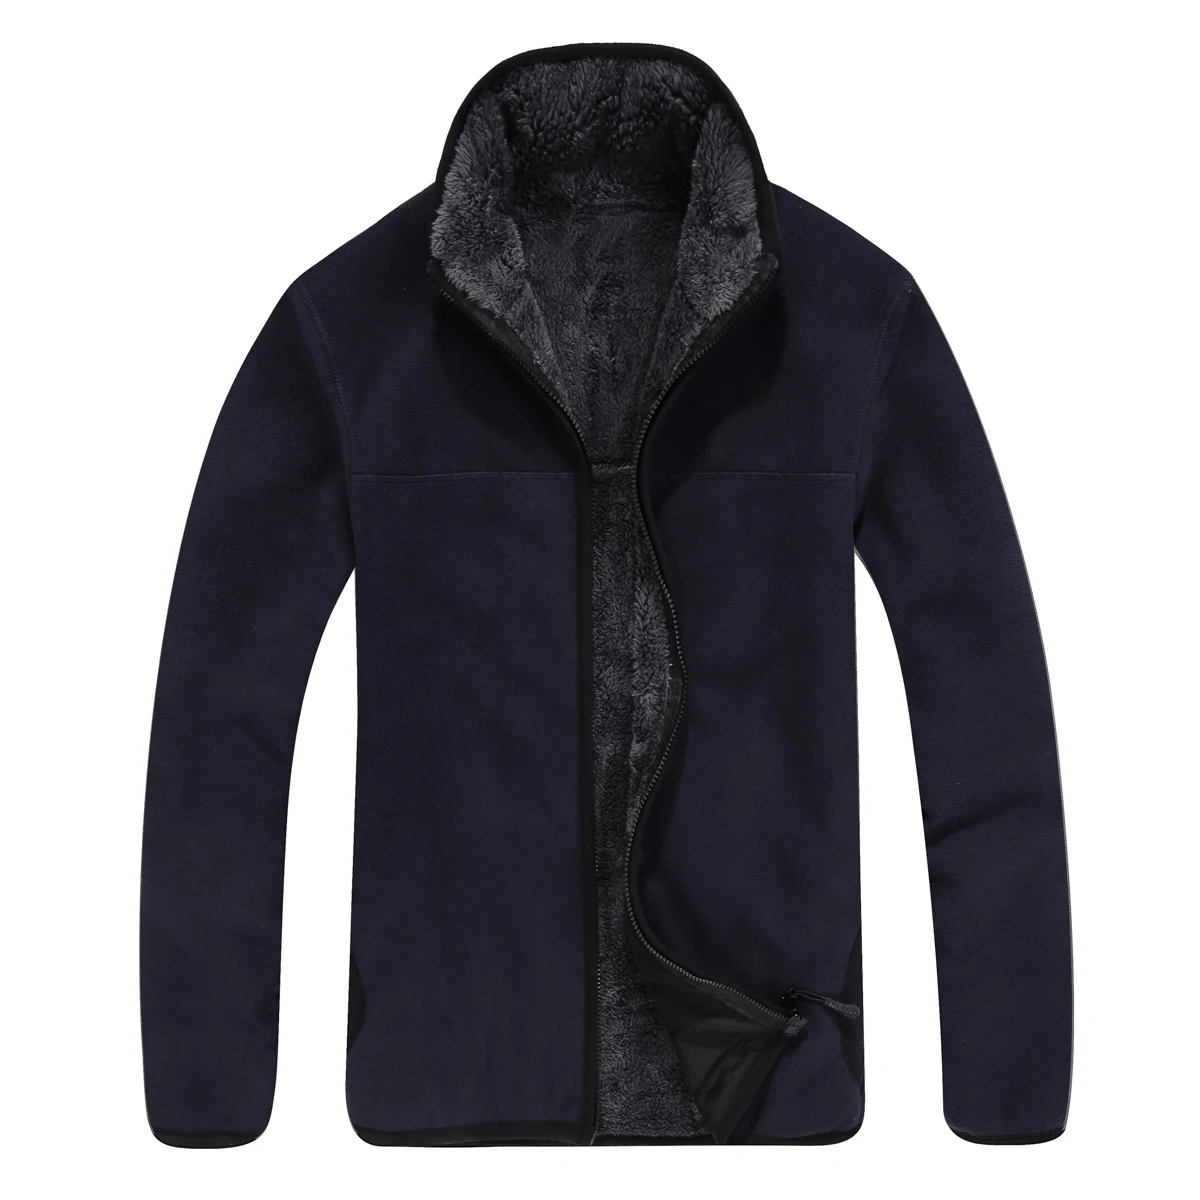 Mens Plus Velvet Warm Fleece Jacket Winter Outdoor Sport Thick Thermal Cardigan Coat Fleece Liner Riding Hiking Windproof Jacket